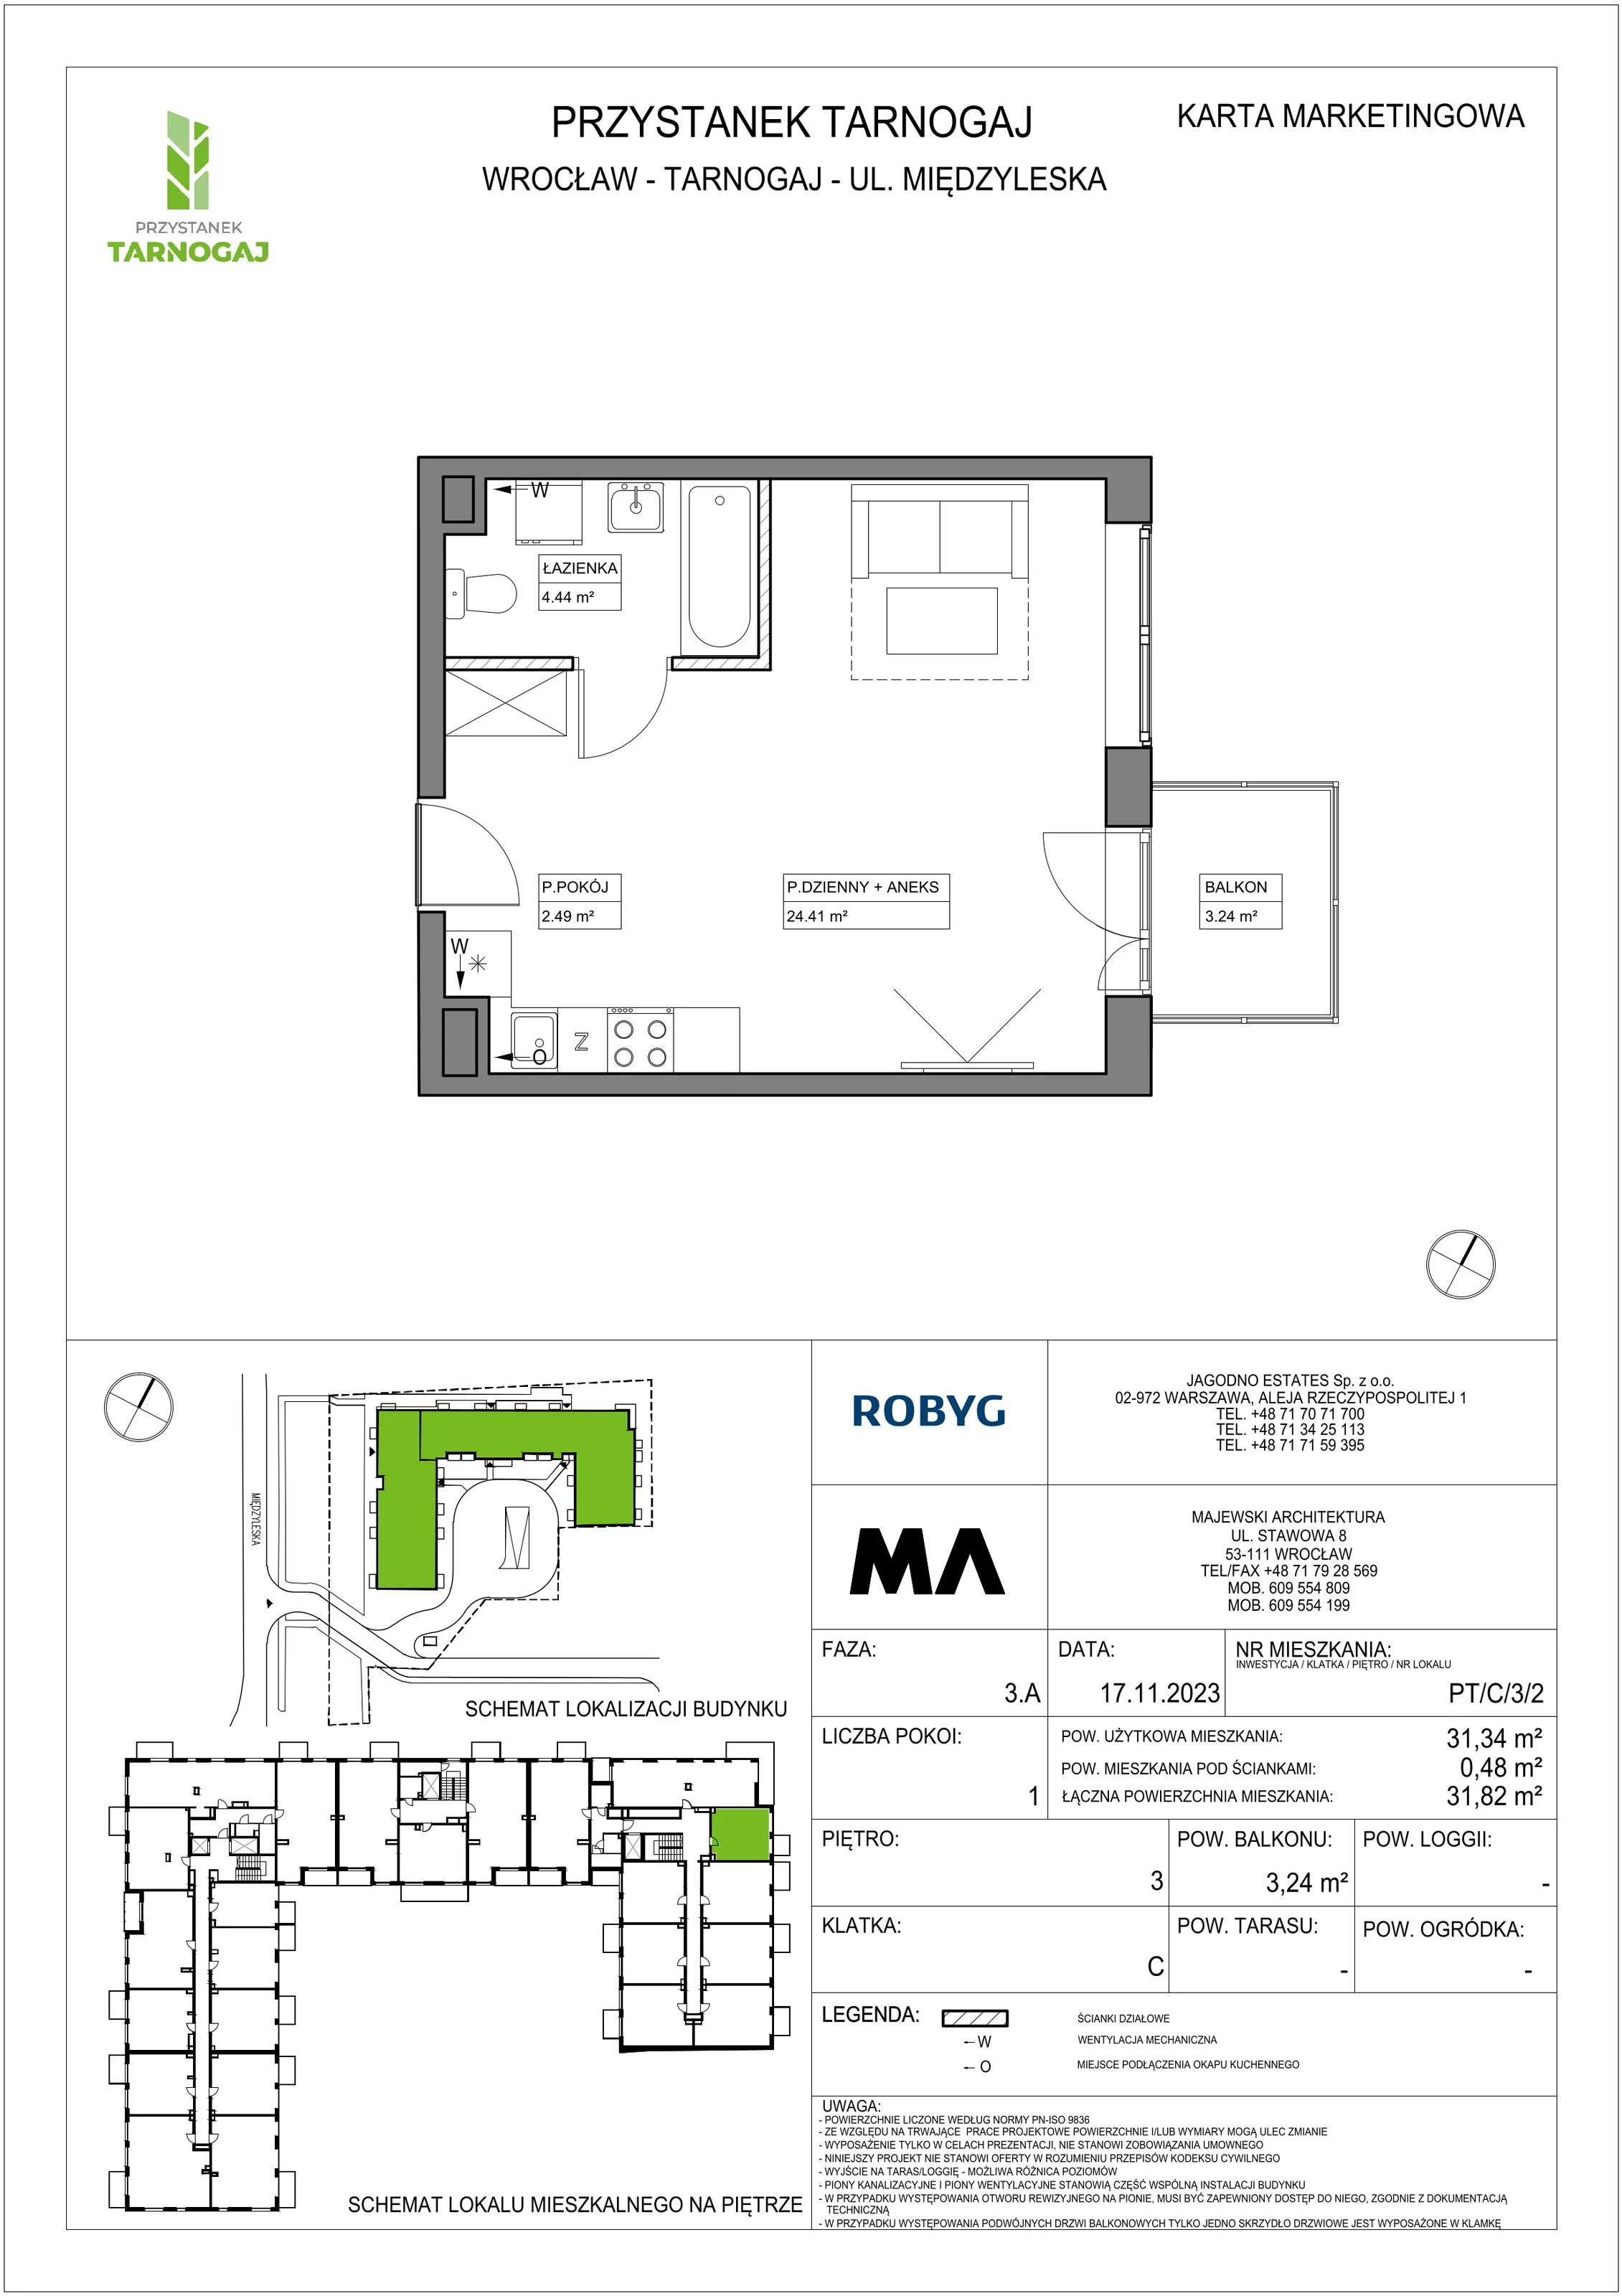 Mieszkanie 31,34 m², piętro 3, oferta nr PT/C/3/2, Przystanek Tarnogaj, Wrocław, Tarnogaj, Krzyki, ul. Międzyleska / Gazowa